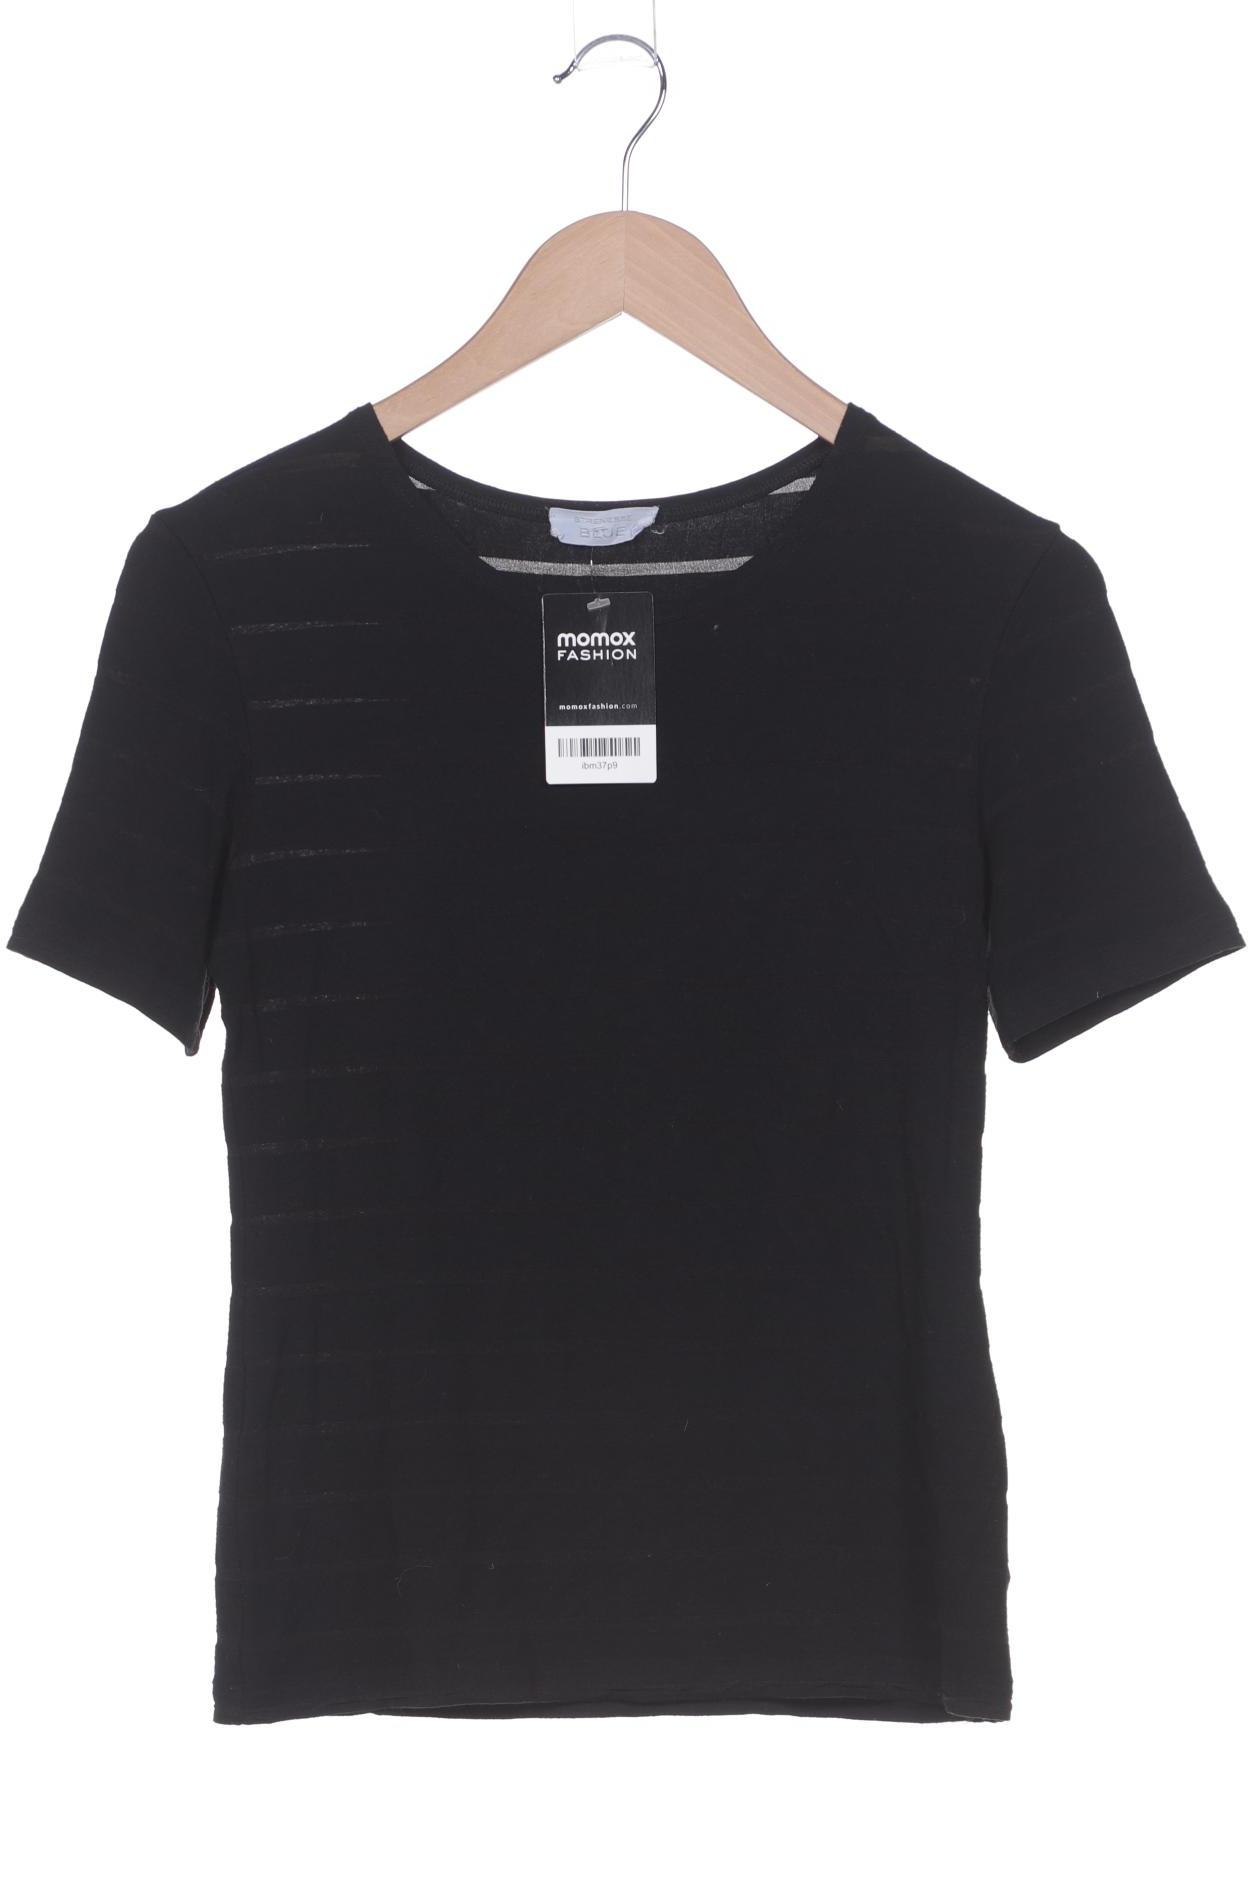 Strenesse Damen T-Shirt, schwarz von Strenesse